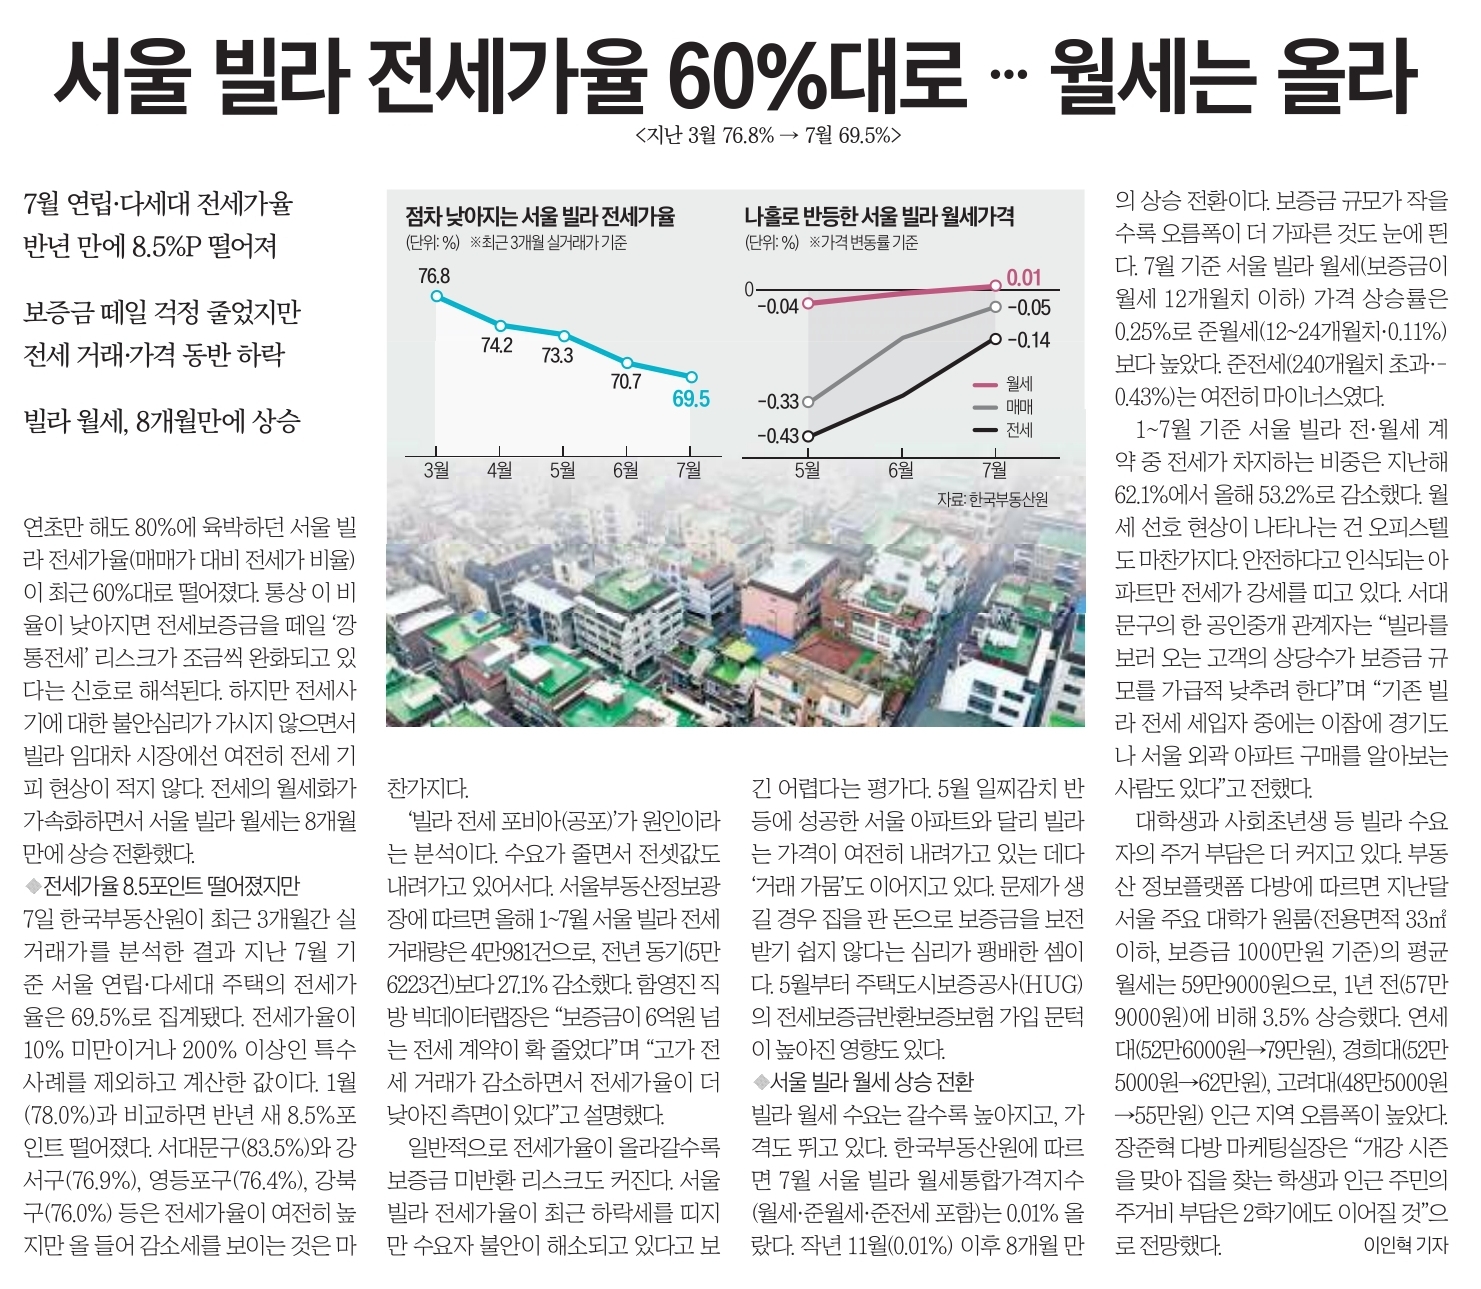 서울 빌자 전세가율 60%대로 월세는 올라